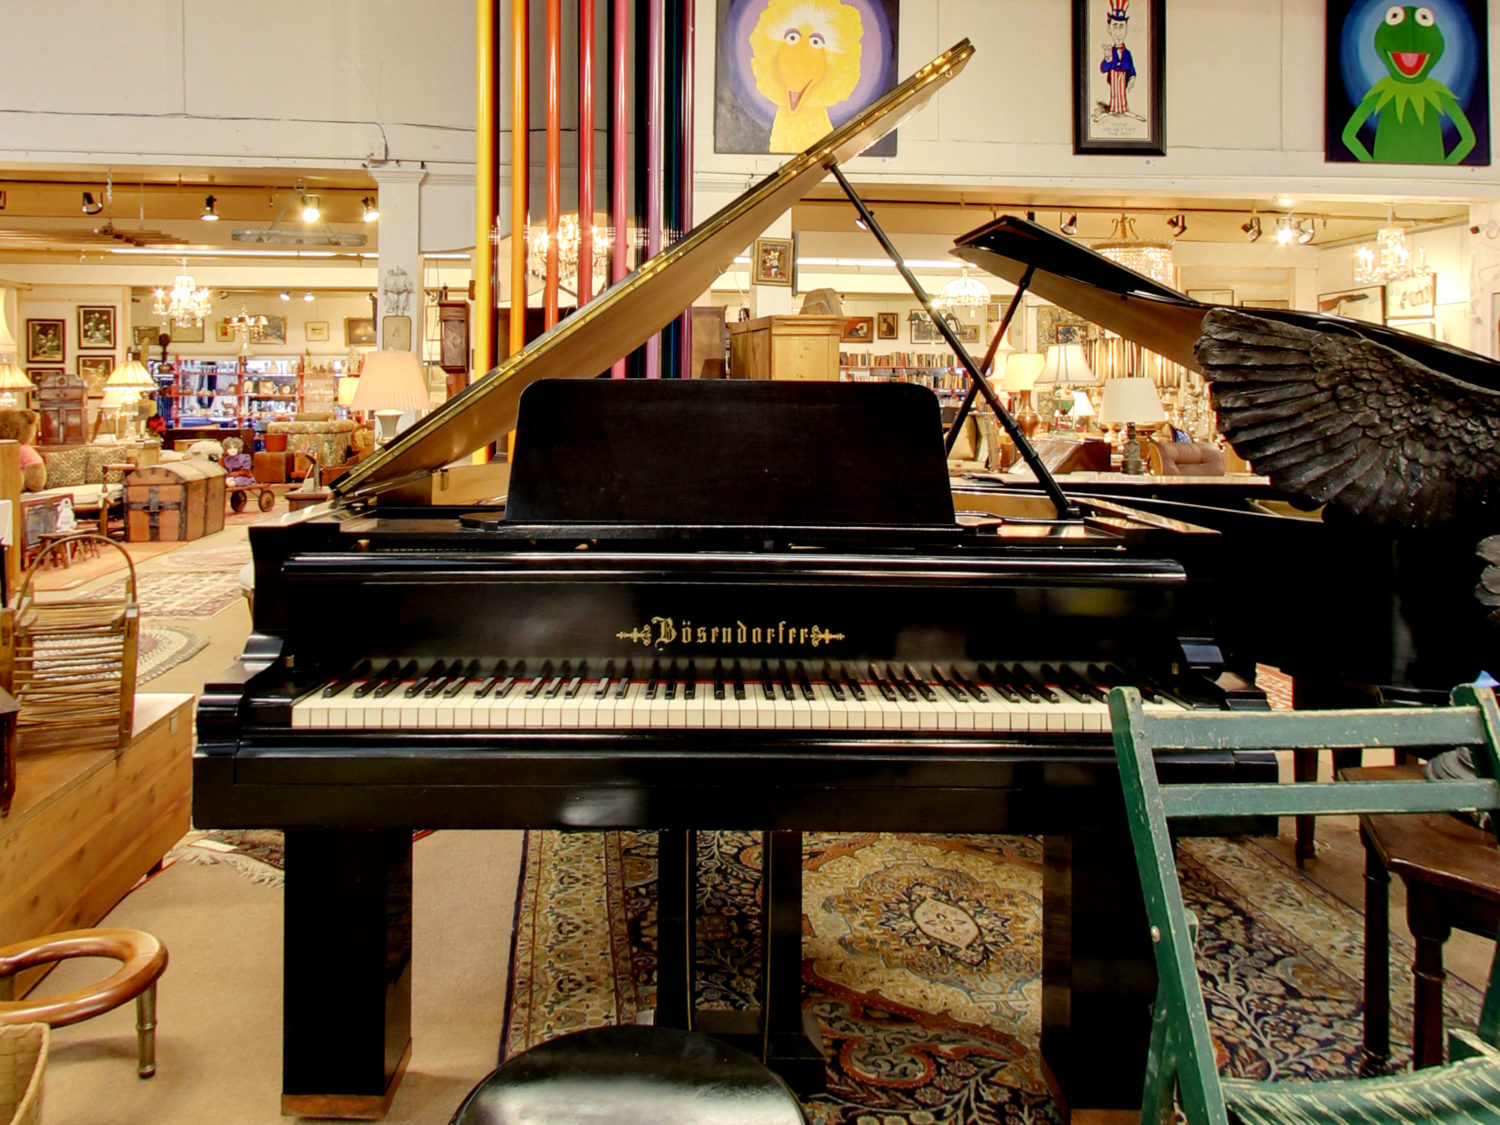 Bosendorfer Piano in Our Fine Estate, Inc. Estate Showroom